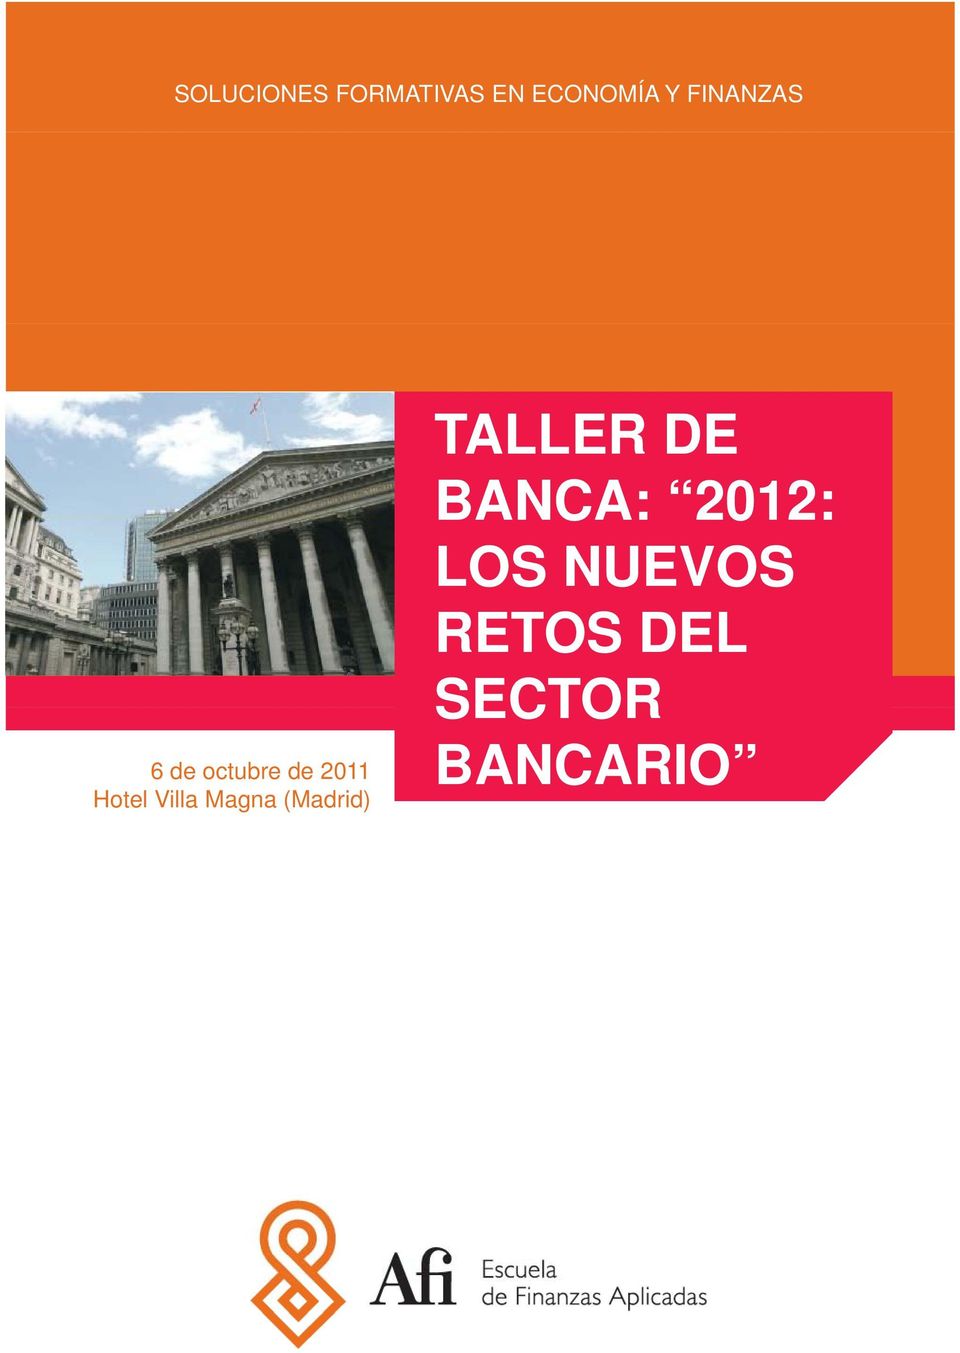 TALLER DE BANCA: 2012: